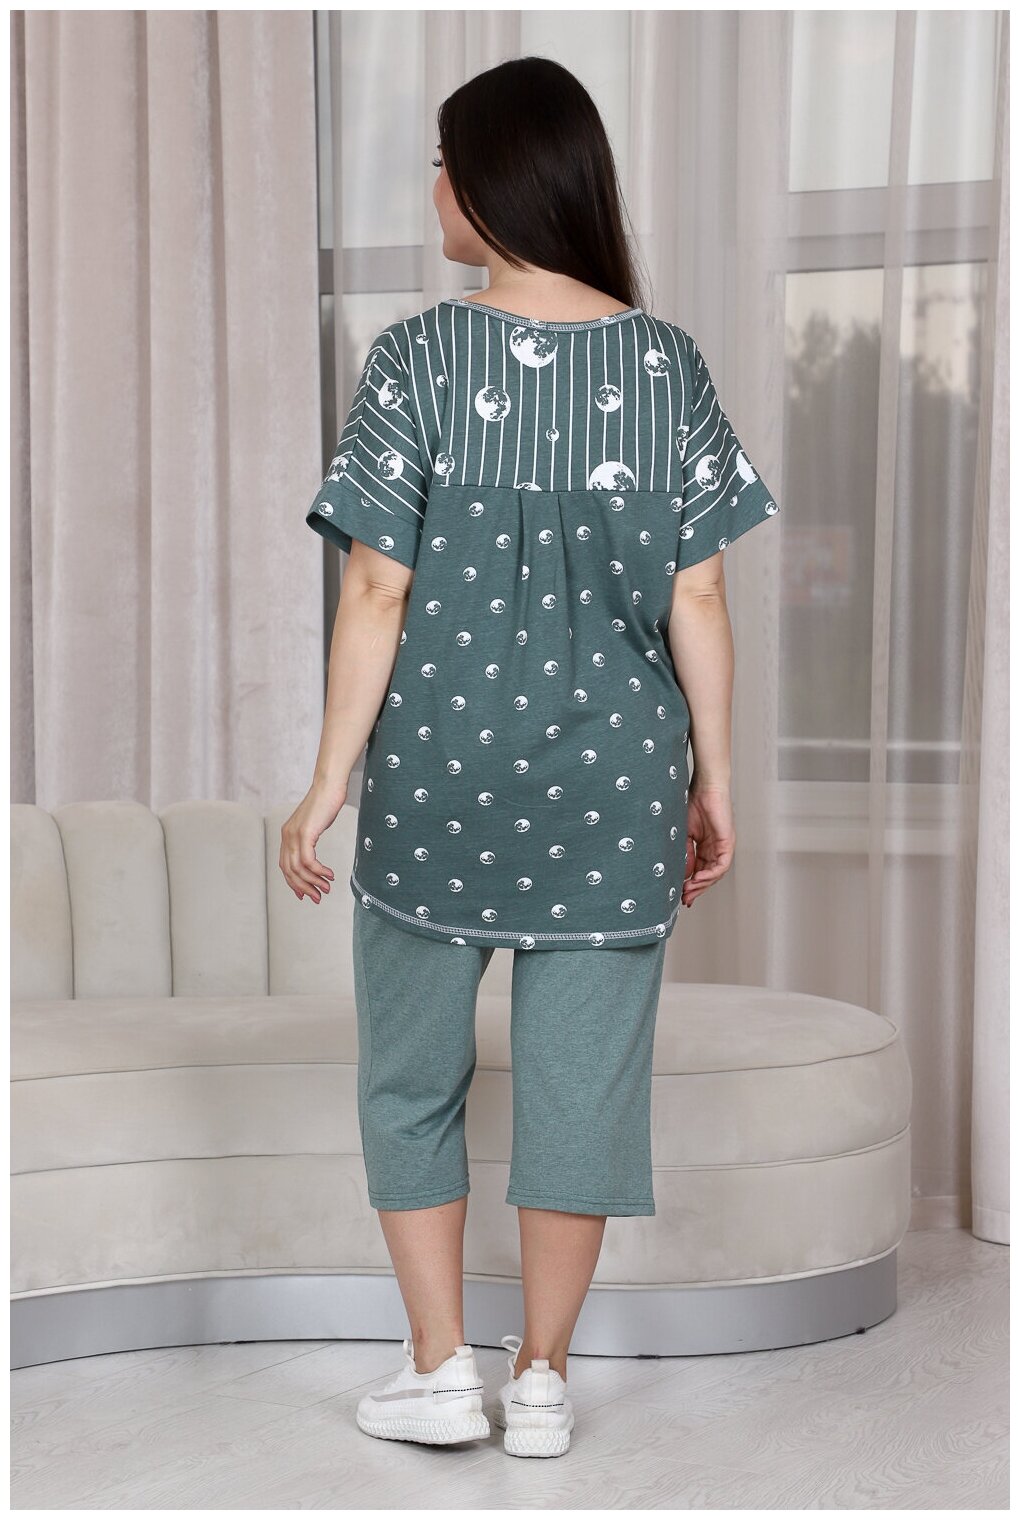 Комплект Натали, бриджи, футболка, капри, короткий рукав, пояс на резинке, карманы, трикотажная, размер 54, зеленый - фотография № 13